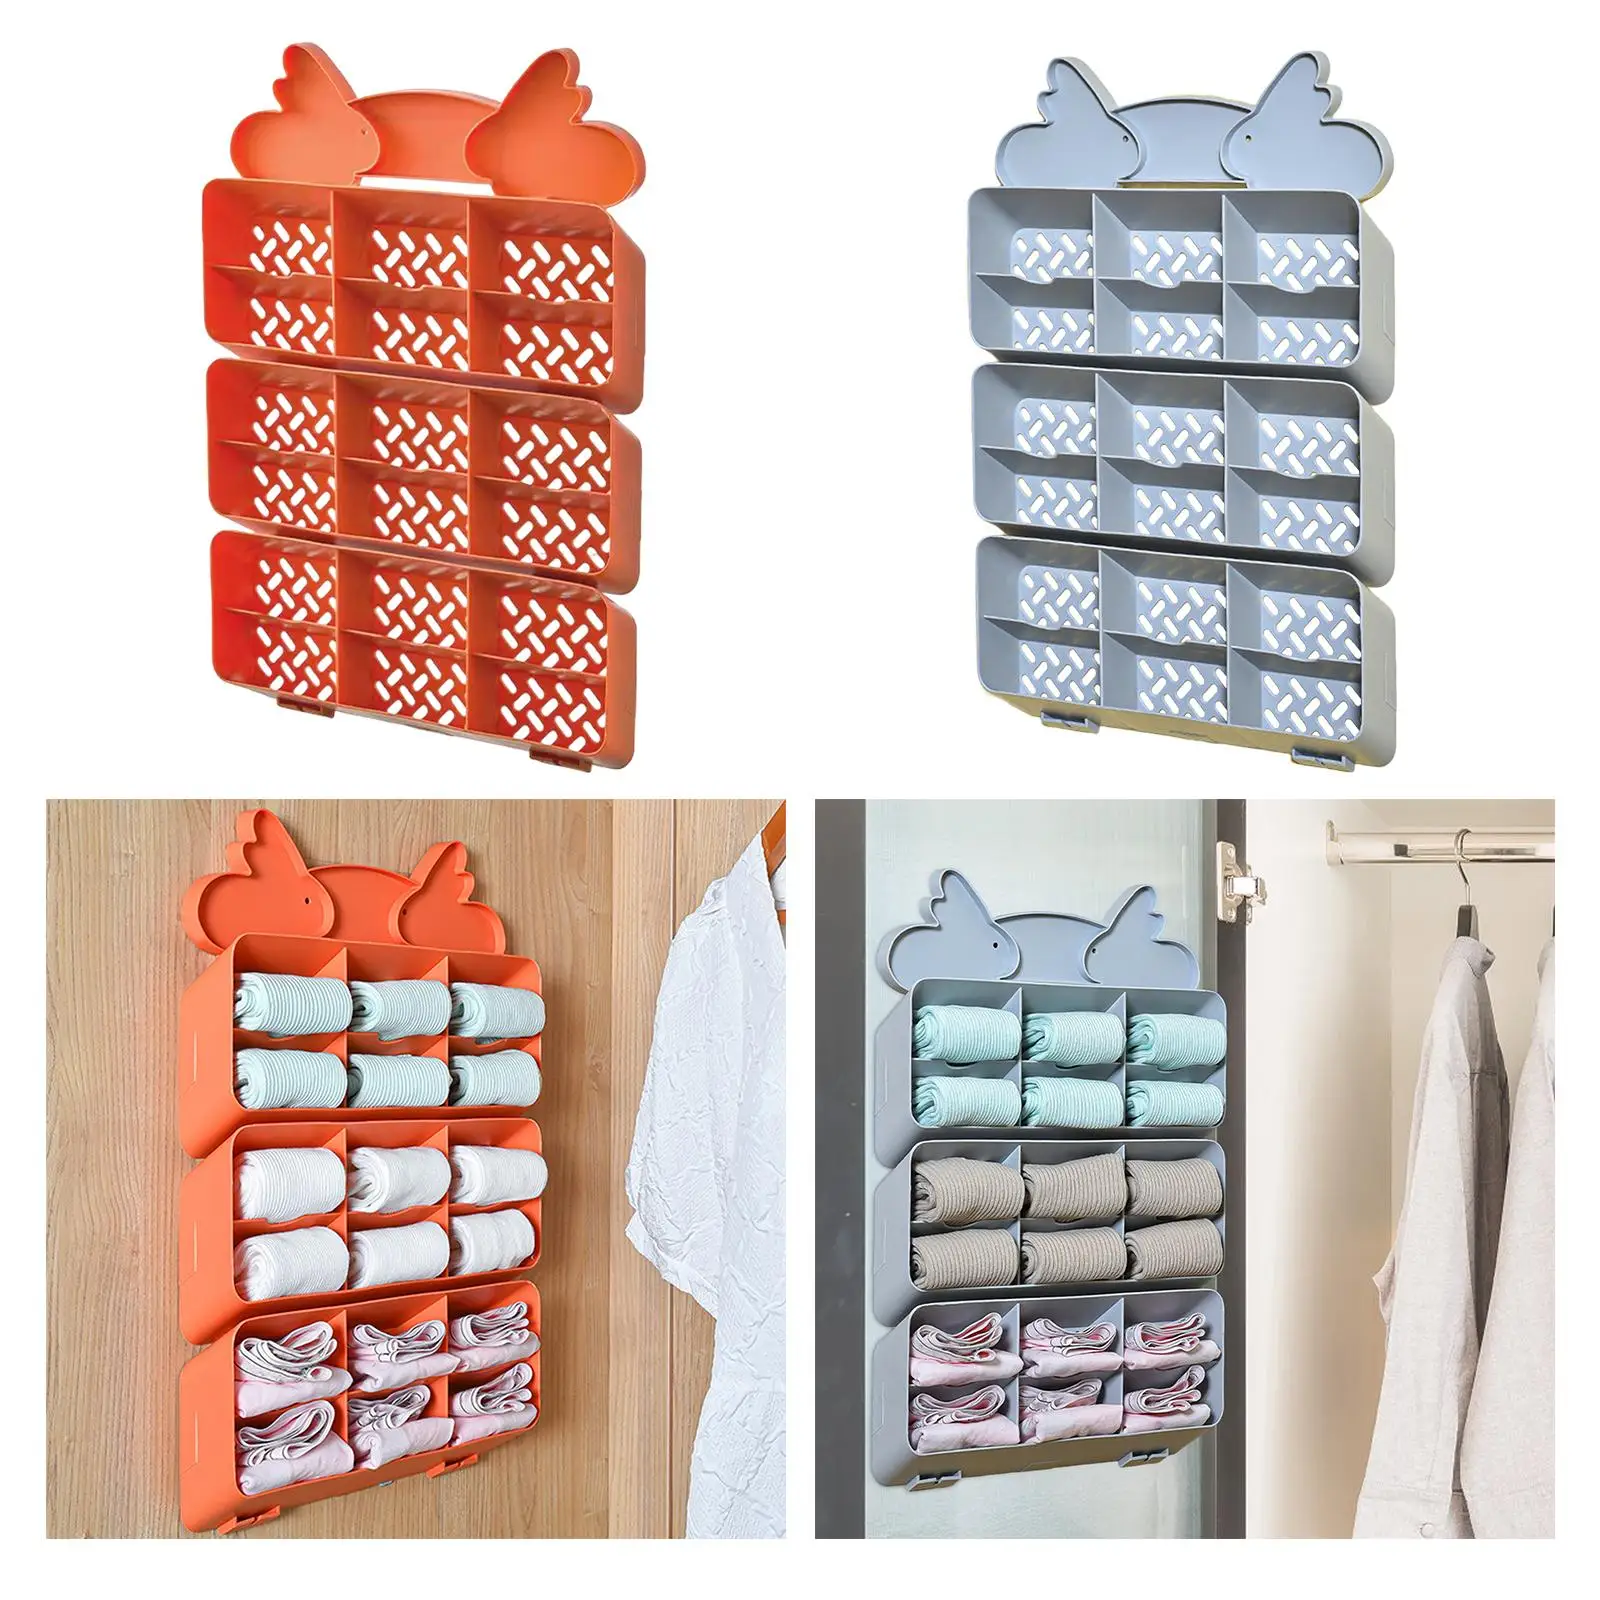 Socks Underwear Storage Hanging Wall or Door Hanging Storage Shelf for Storing Socks, Bra, Belts, Lingerie for Bathroom Dorm